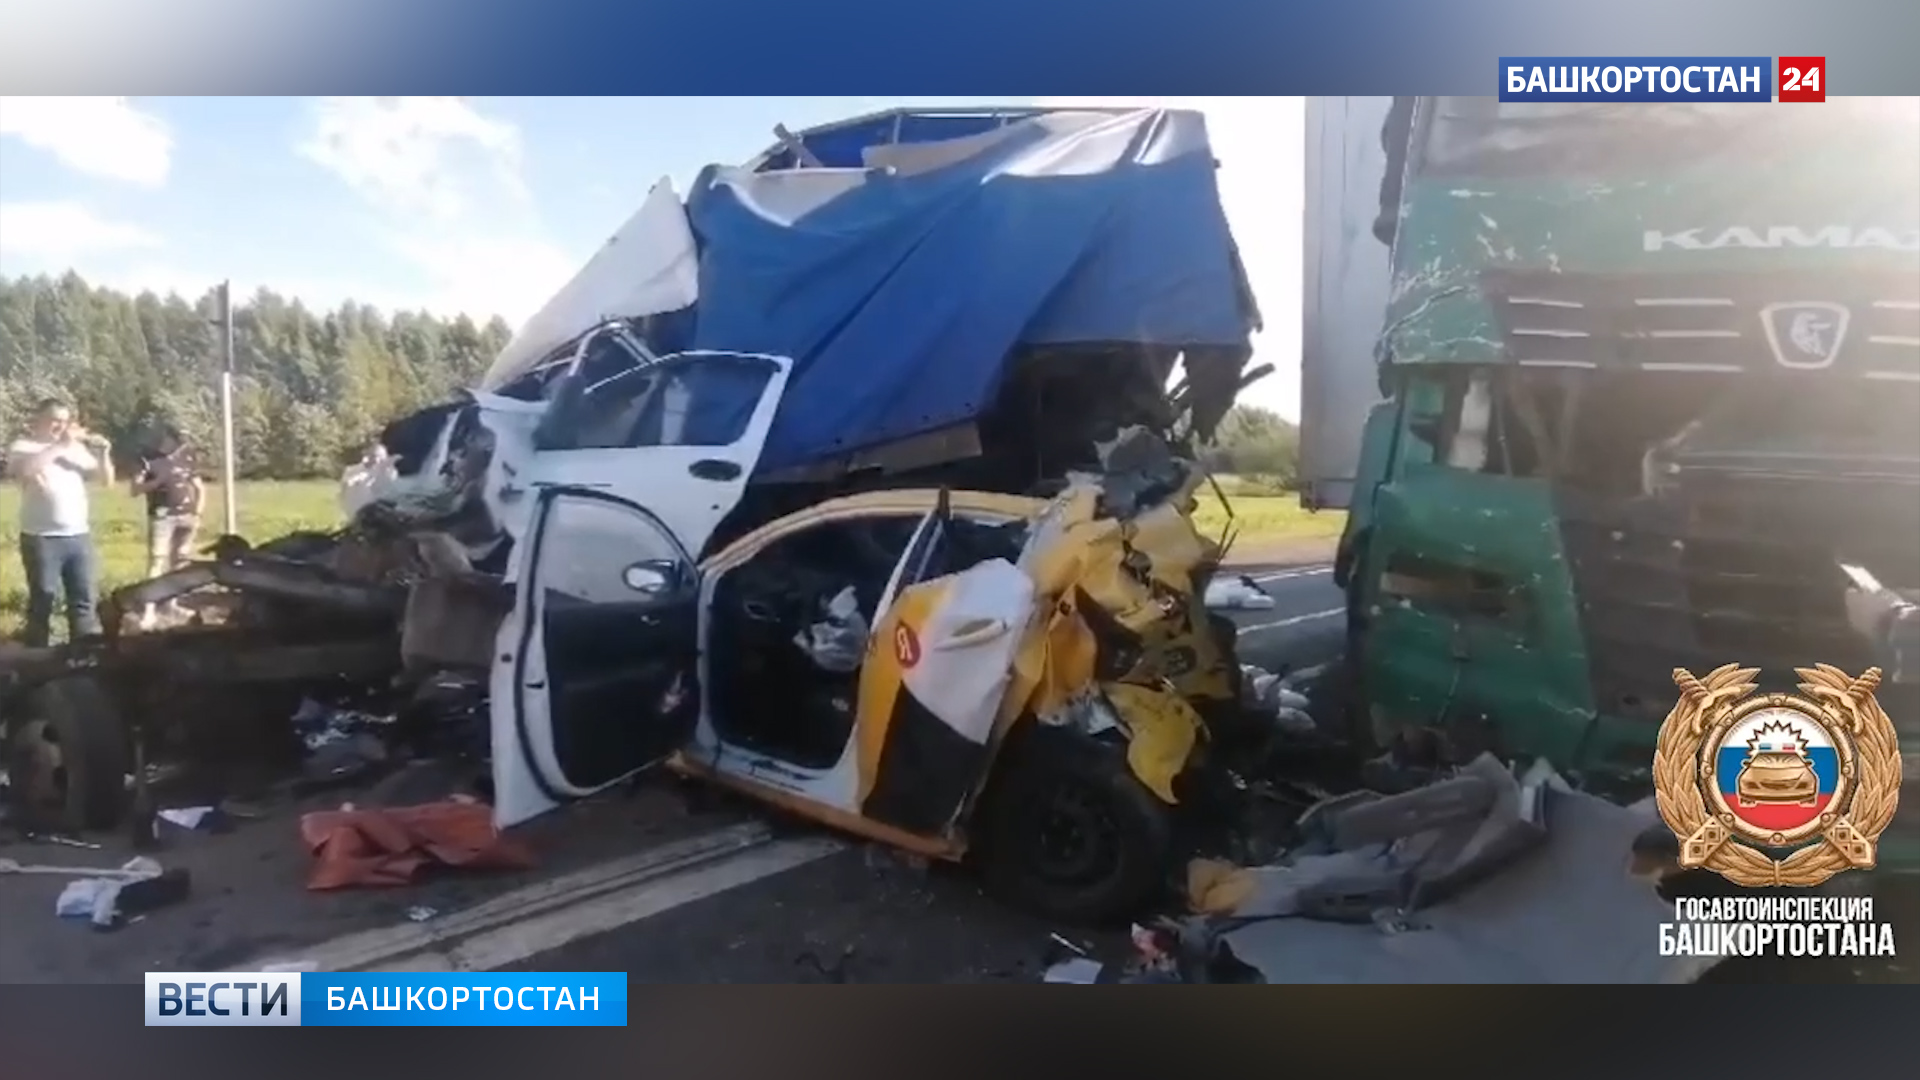 Три человека пострадали в массовой аварии на трассе М-5 «Урал» в Башкирии